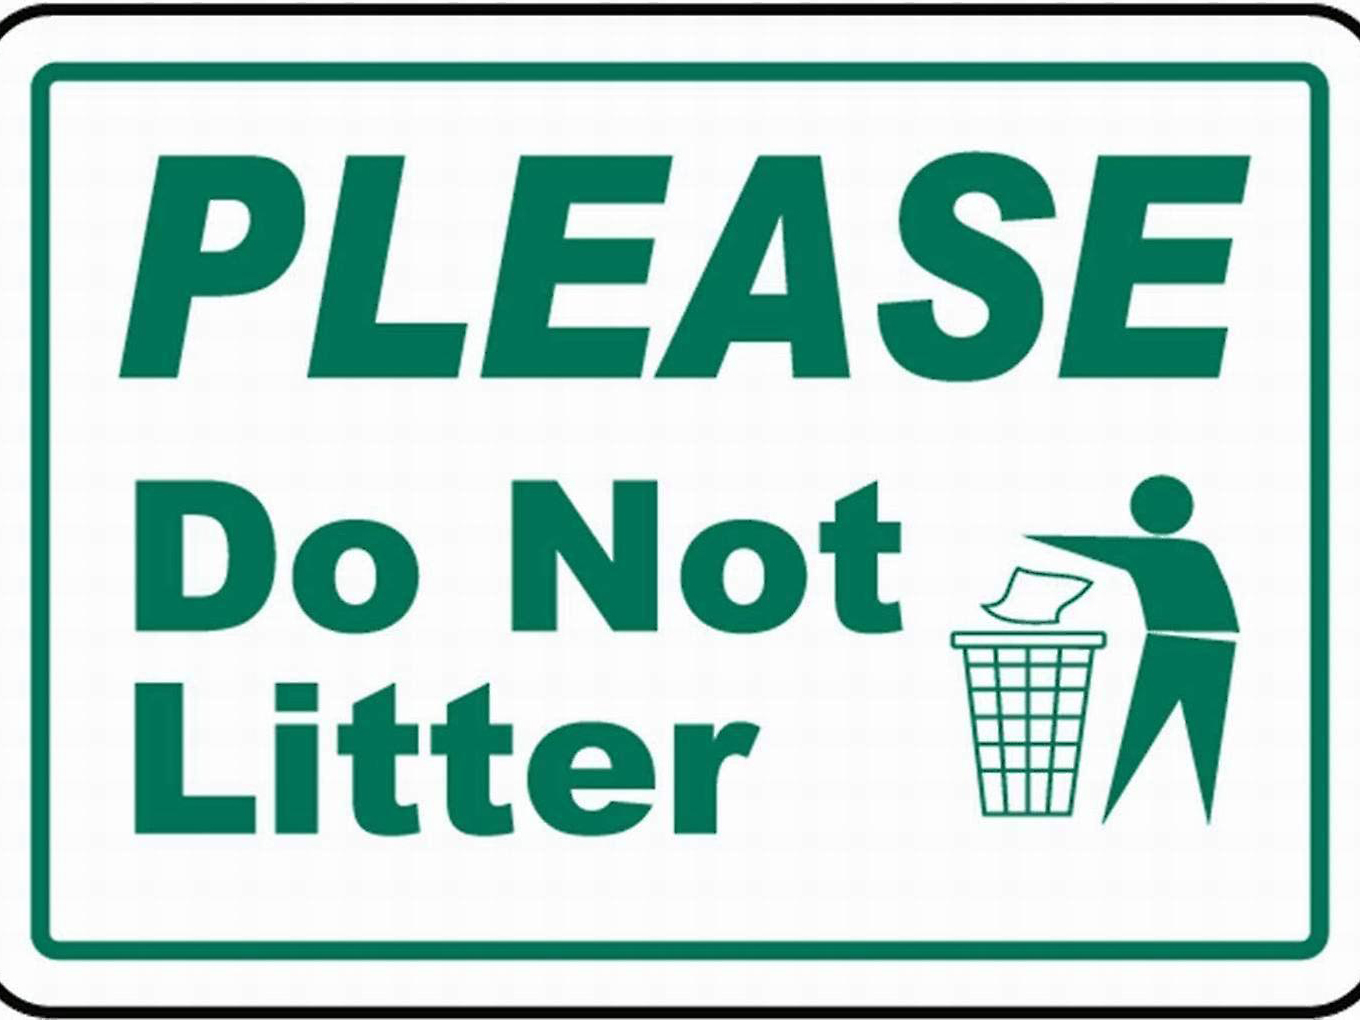 أشياء لا يجب فعلها أثناء رحلة أمريكا للمقيمين في الإمارات - لا ترمي القمامة